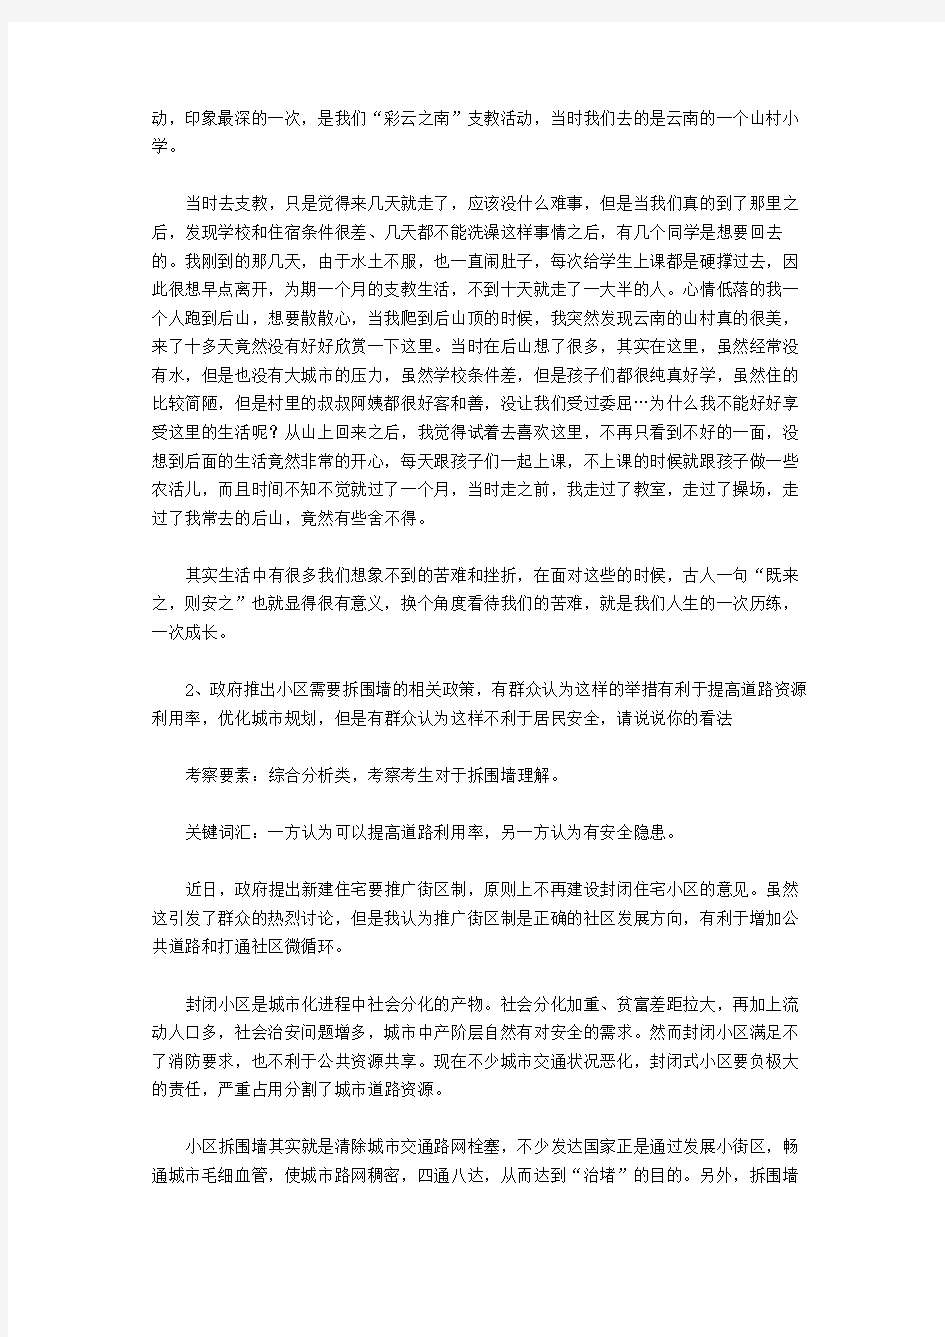 2016年上海公务员考试面试真题及解析(3月23日)